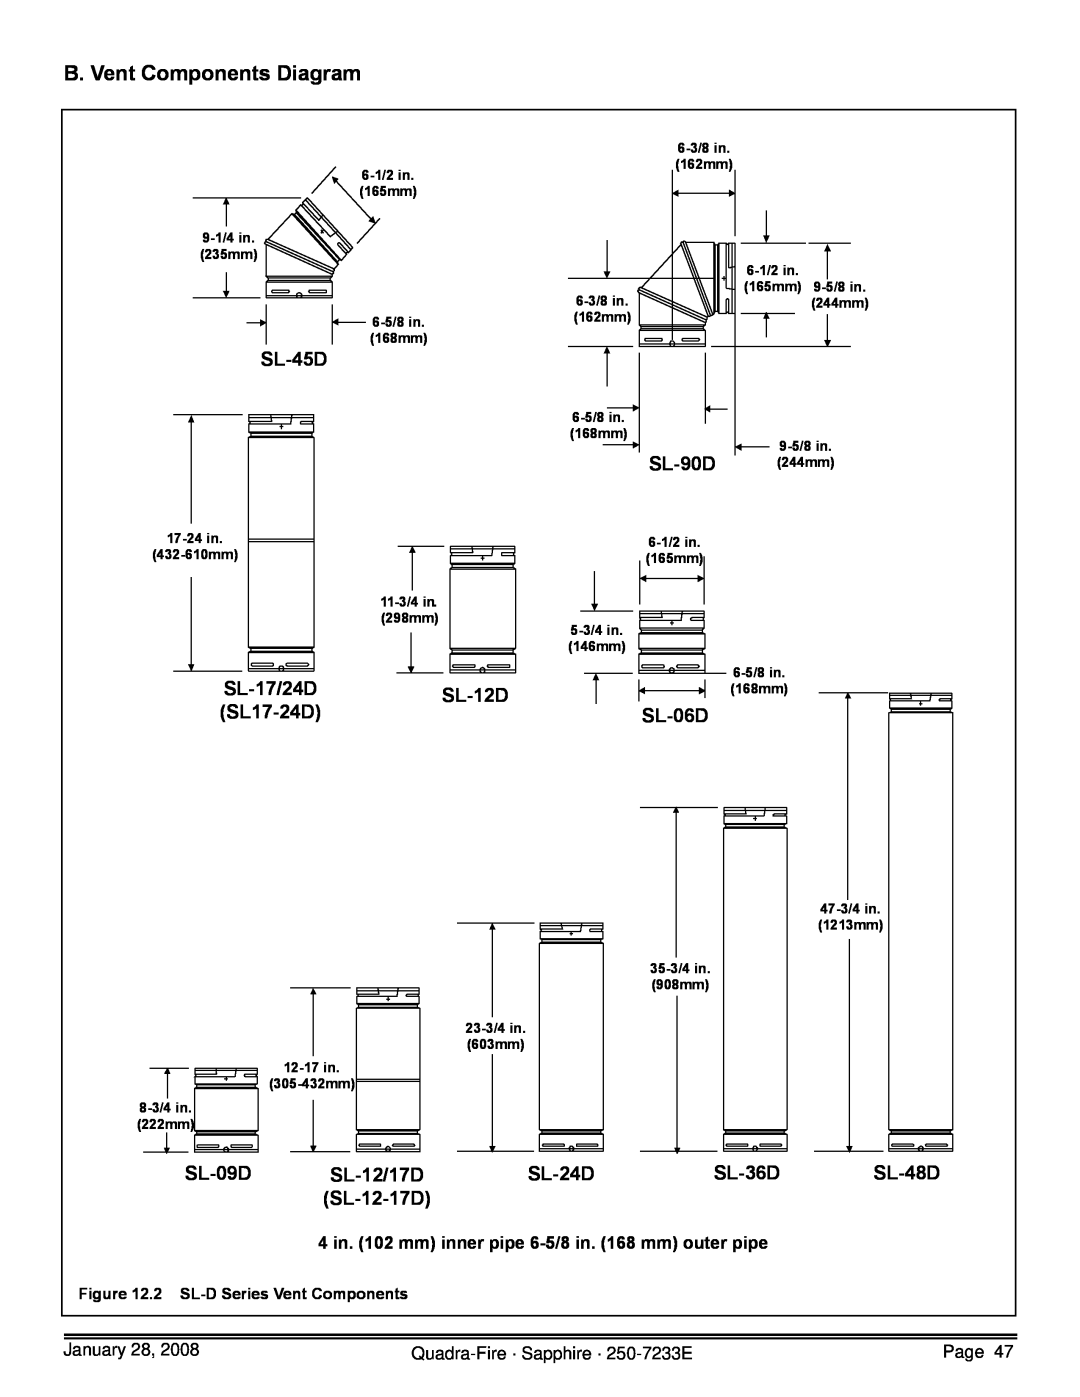 Quadra-Fire 839-1390 B. Vent Components Diagram, SL-45D, SL-90D, SL-17/24D, SL-12D, SL17-24D, SL-06D, SL-09D, SL-12/17D 